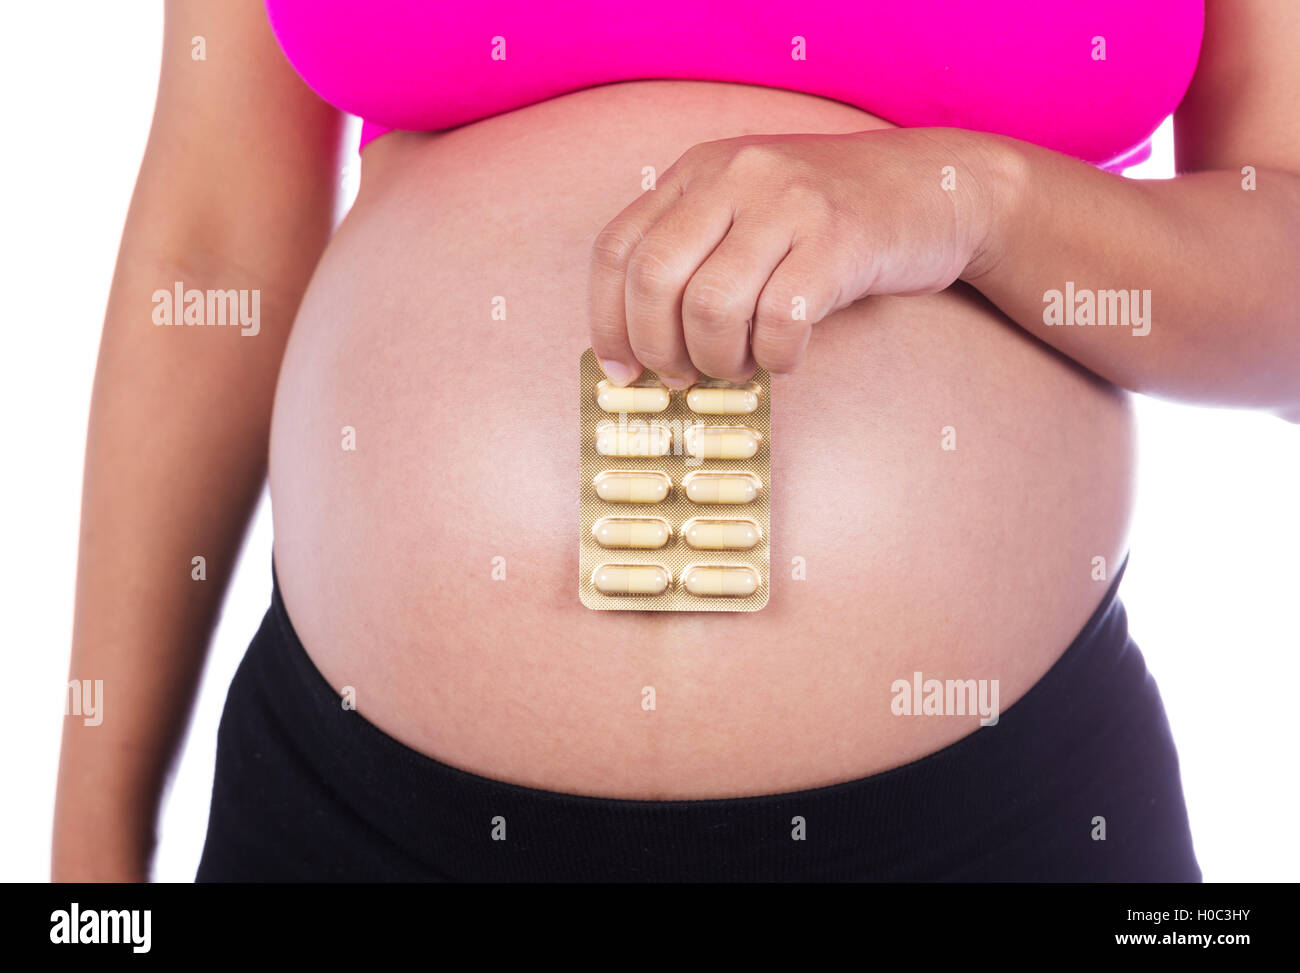 Schwangere Frau mit Packung Pillen in ihren Händen isoliert auf weißem Hintergrund Stockfoto